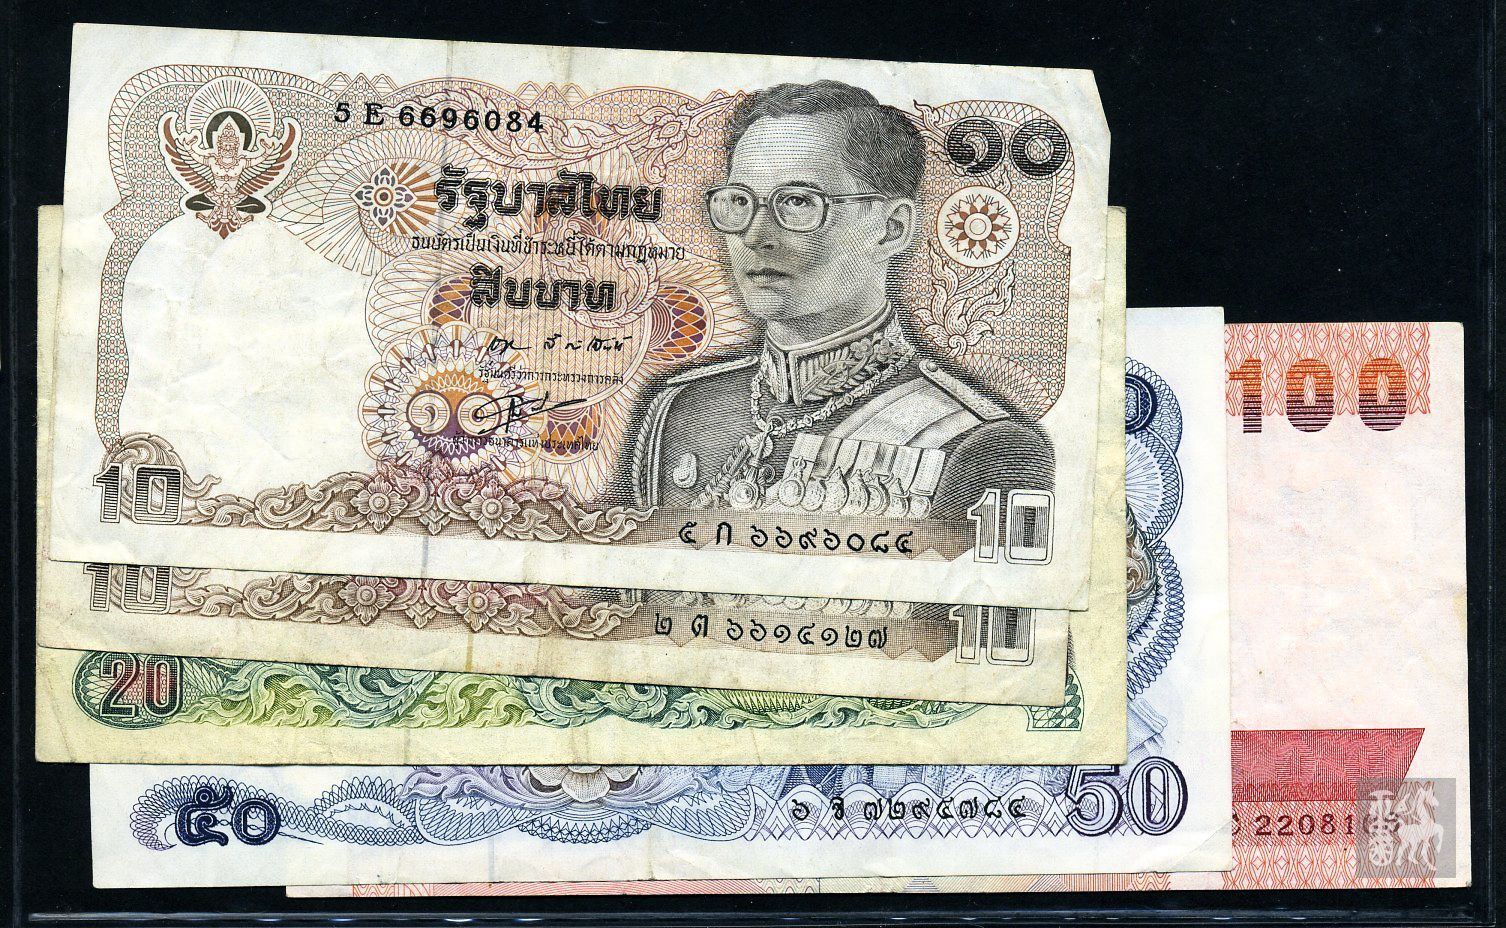 泰国纸币20、50泰铢2张_货币外国币_人和收藏【7788收藏__收藏热线】